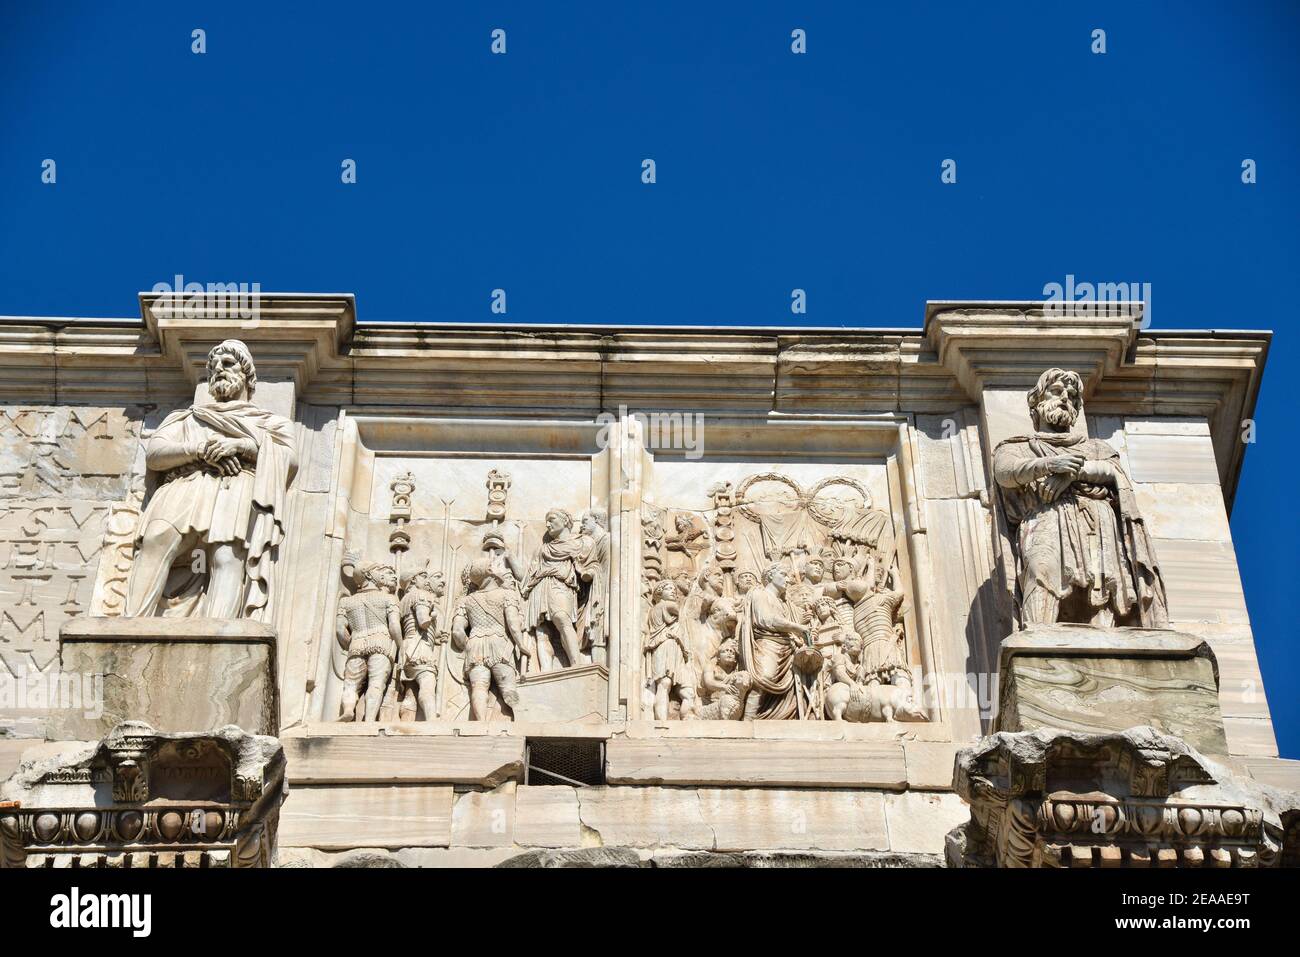 Arch of Constantino or Arco di Constantino in Rome, Italy Stock Photo